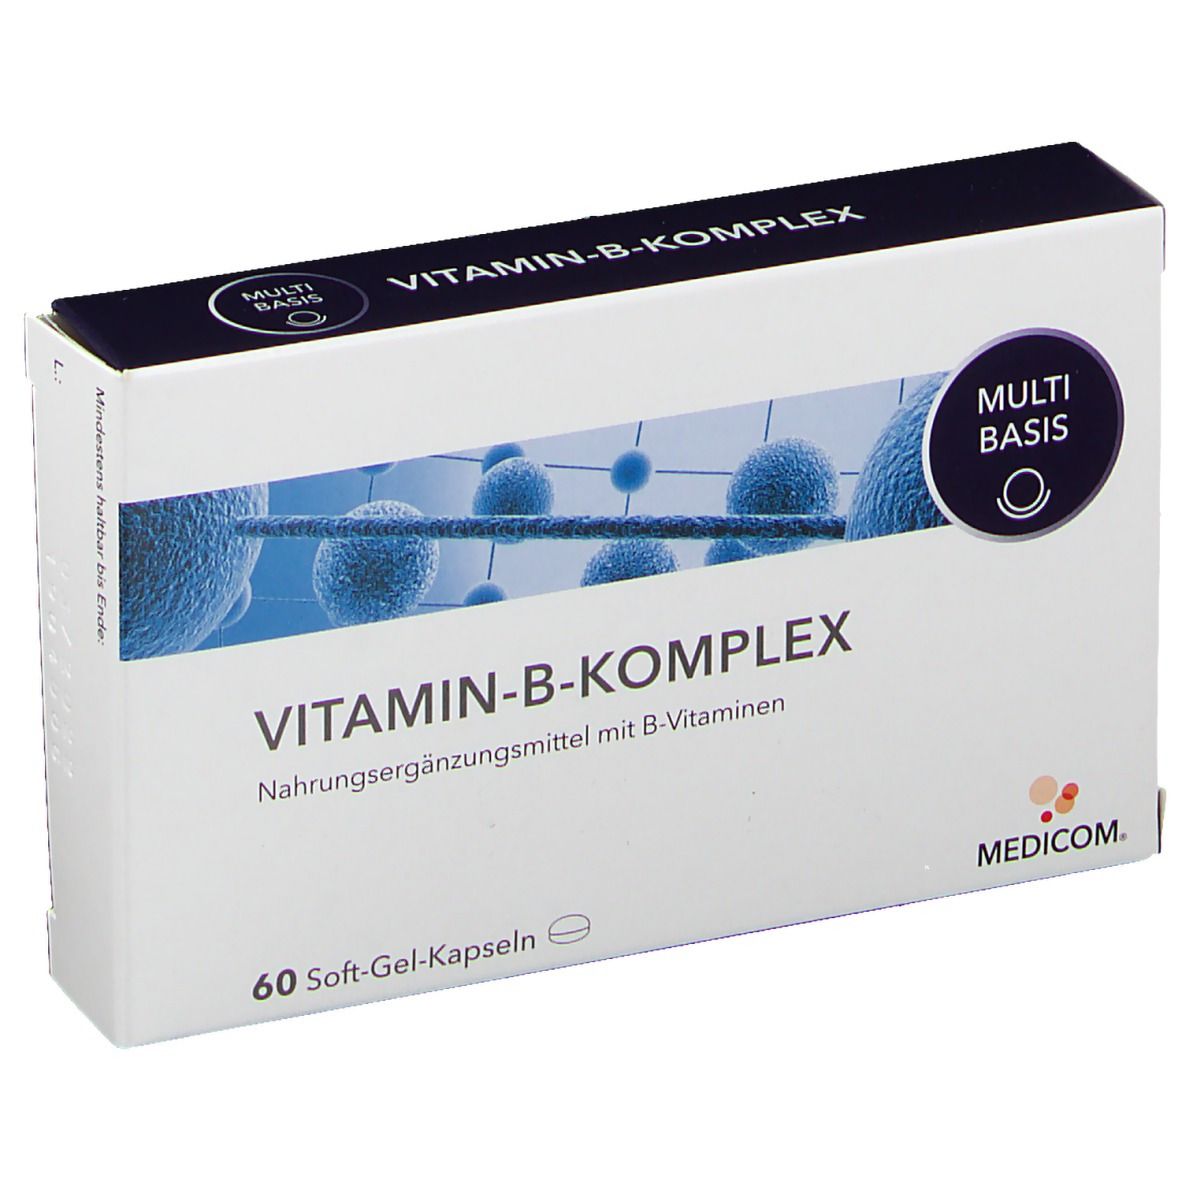 Medicom® Vitamin-B-Komplex